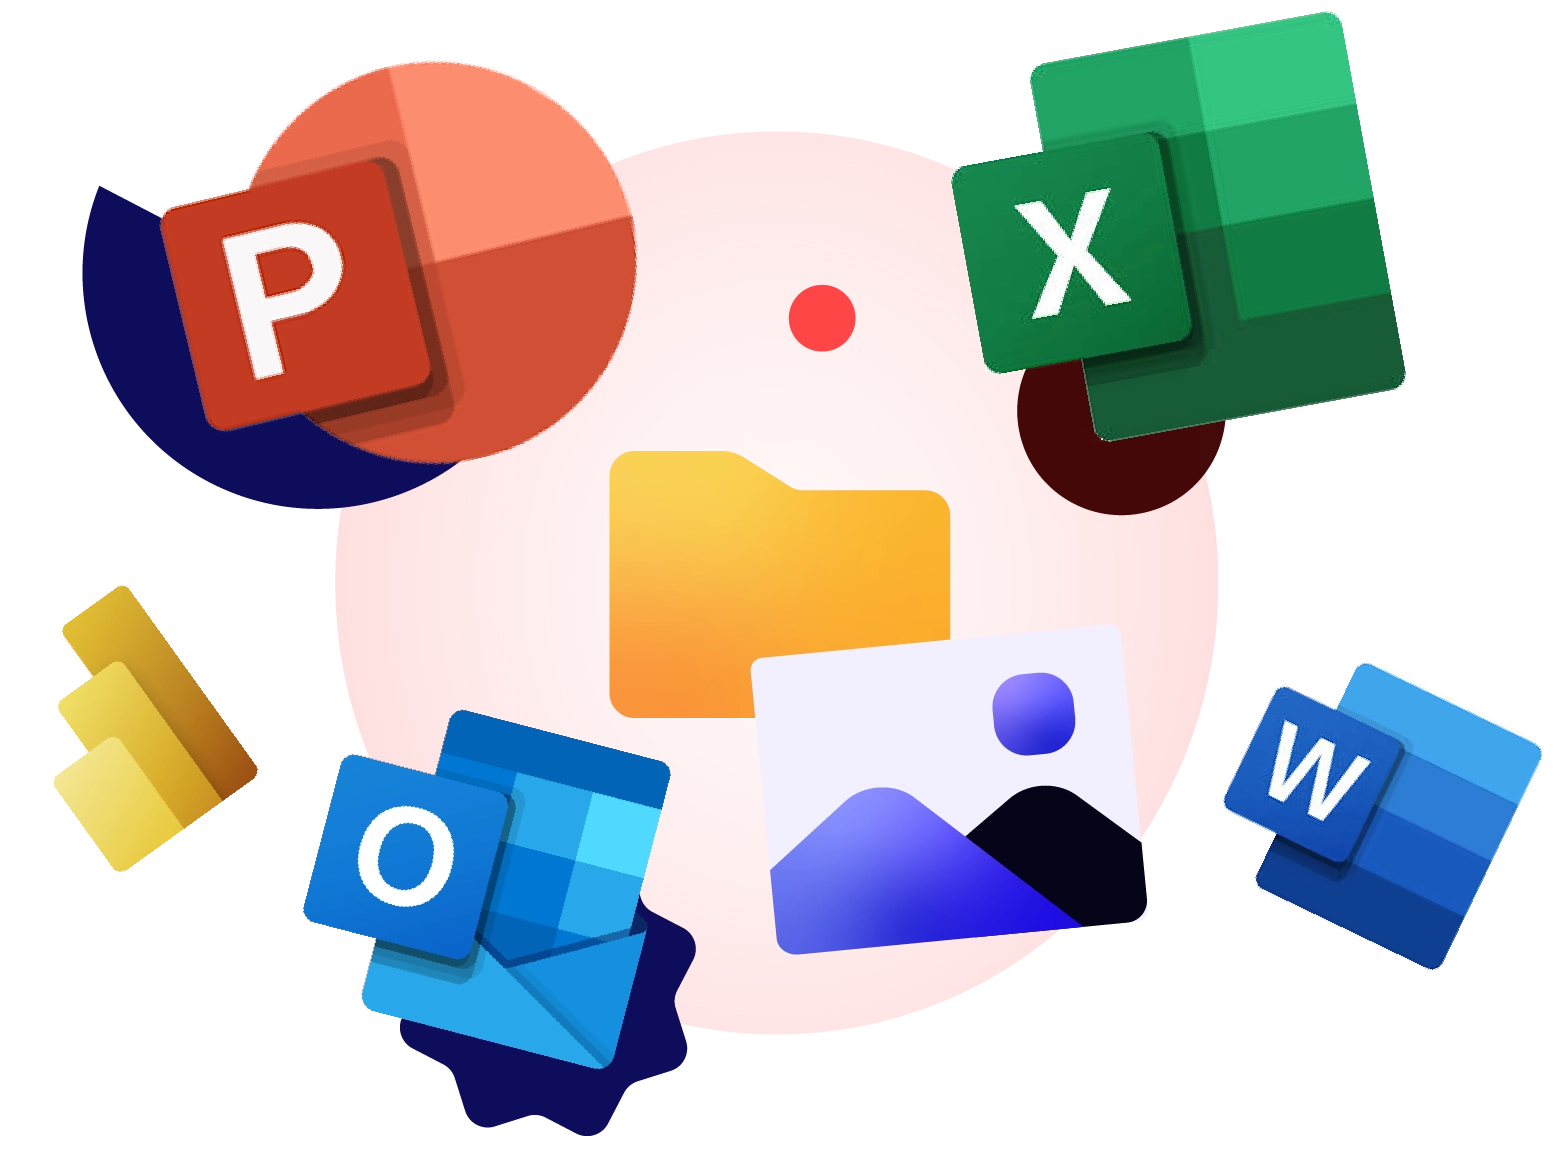 Un visuel montrant toutes les icônes de Microsoft 365, y compris PowerPoint, Excel, Word et Outlook